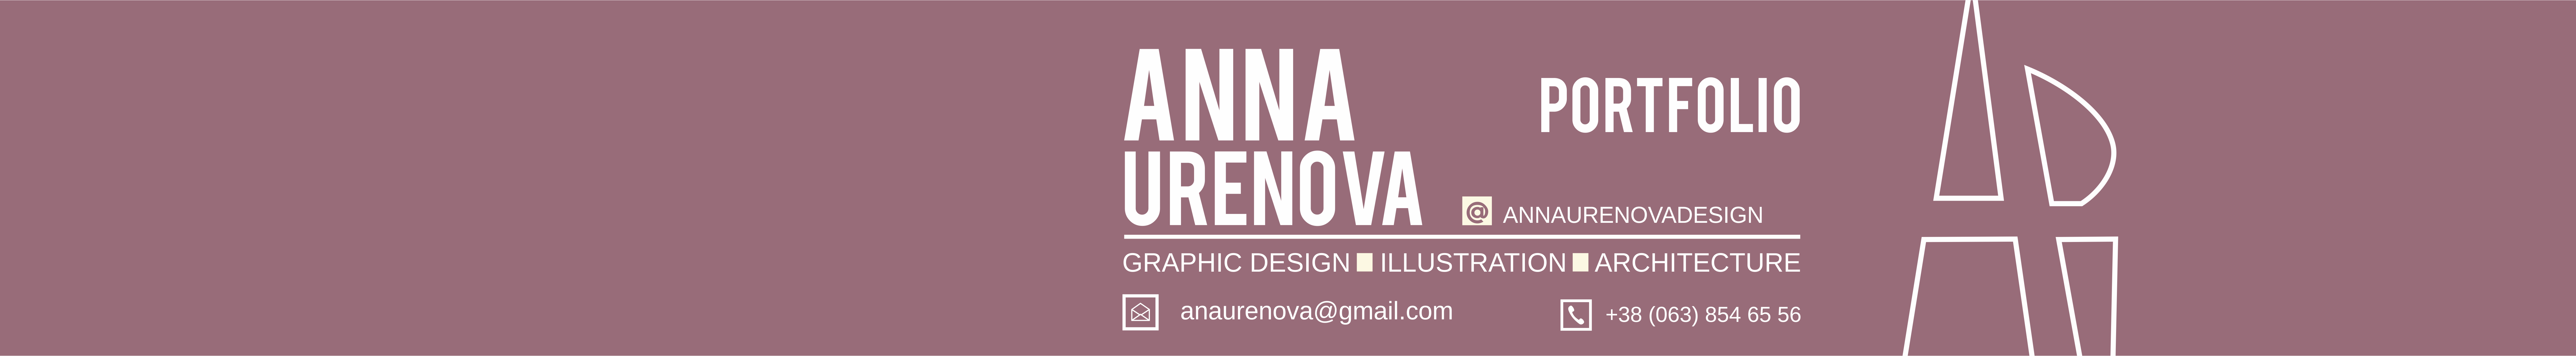 Banner de perfil de Anna Ureñova